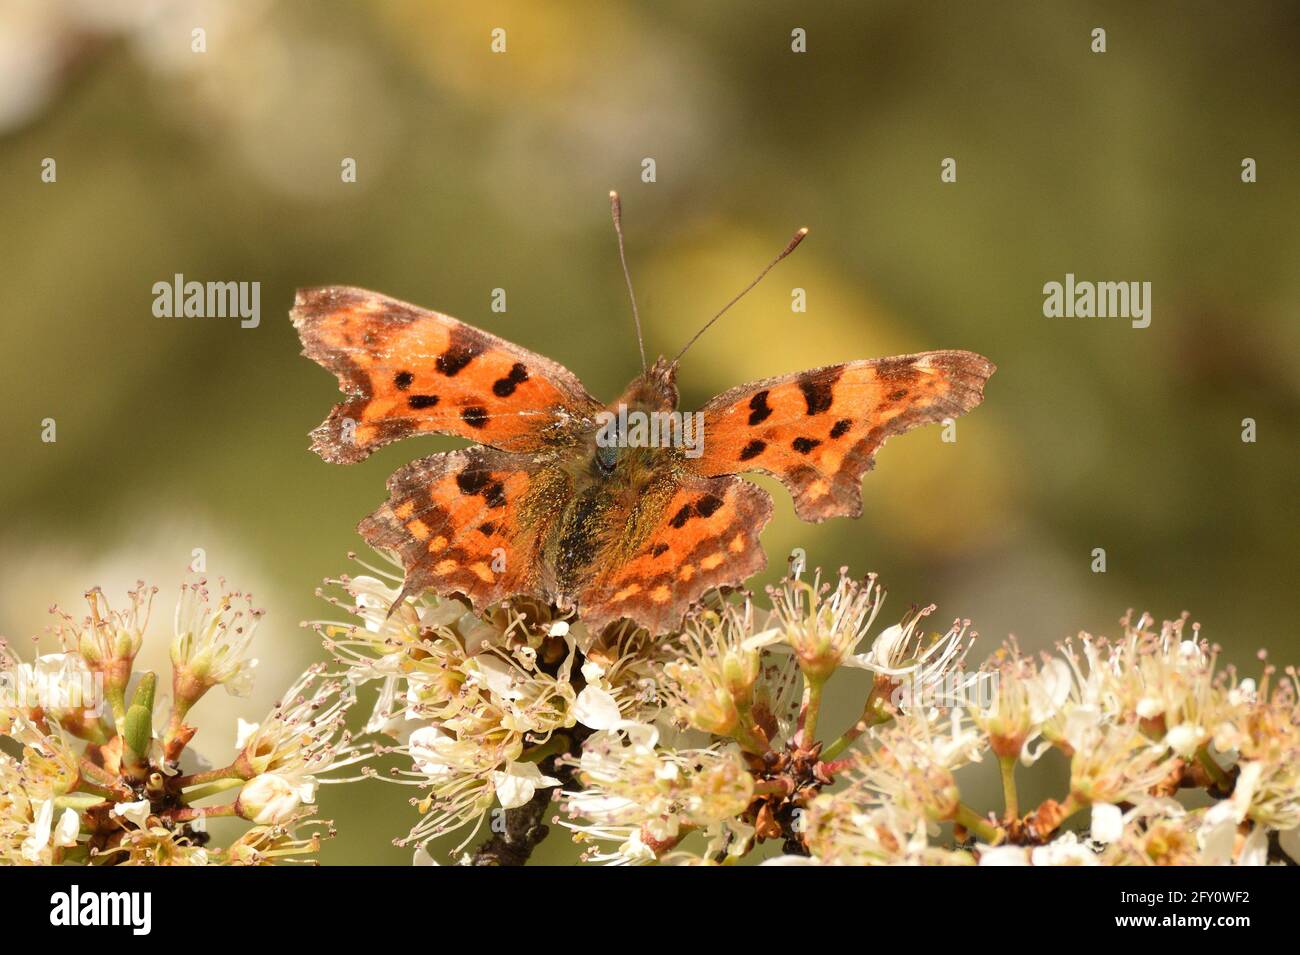 Komma Schmetterling in Ruhe auf Schwarzdorn blüht im frühen Frühling. Hertfordshire, England, Großbritannien. Stockfoto